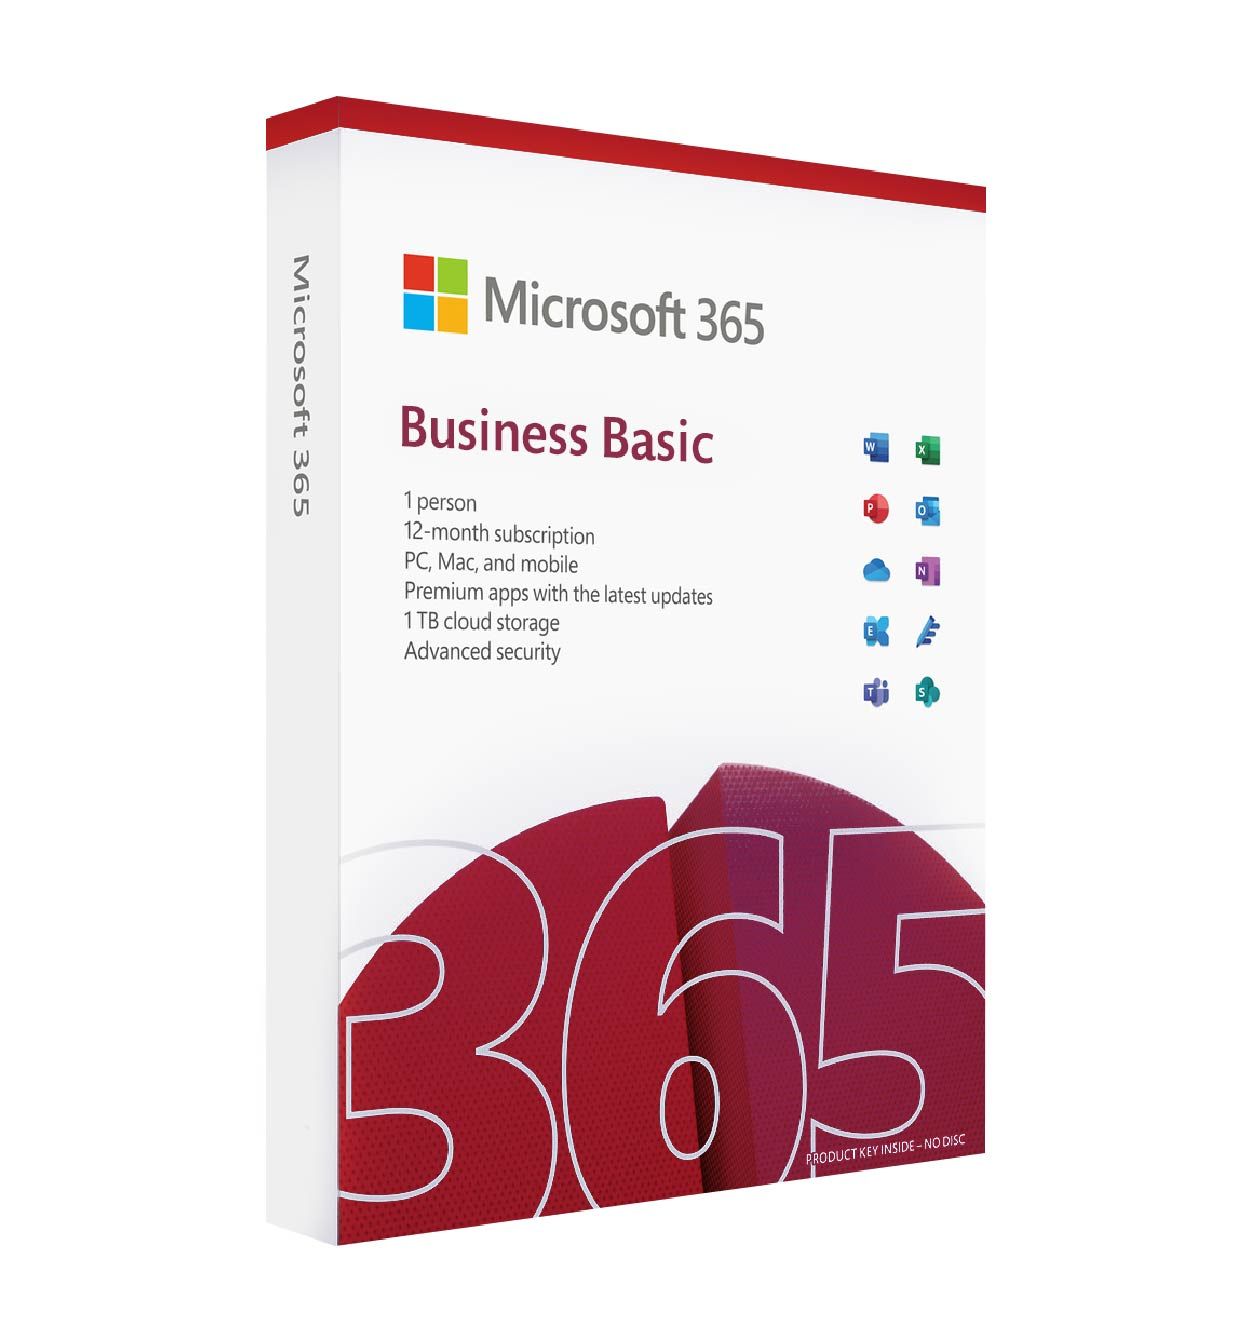 microsoft 365 business basic box